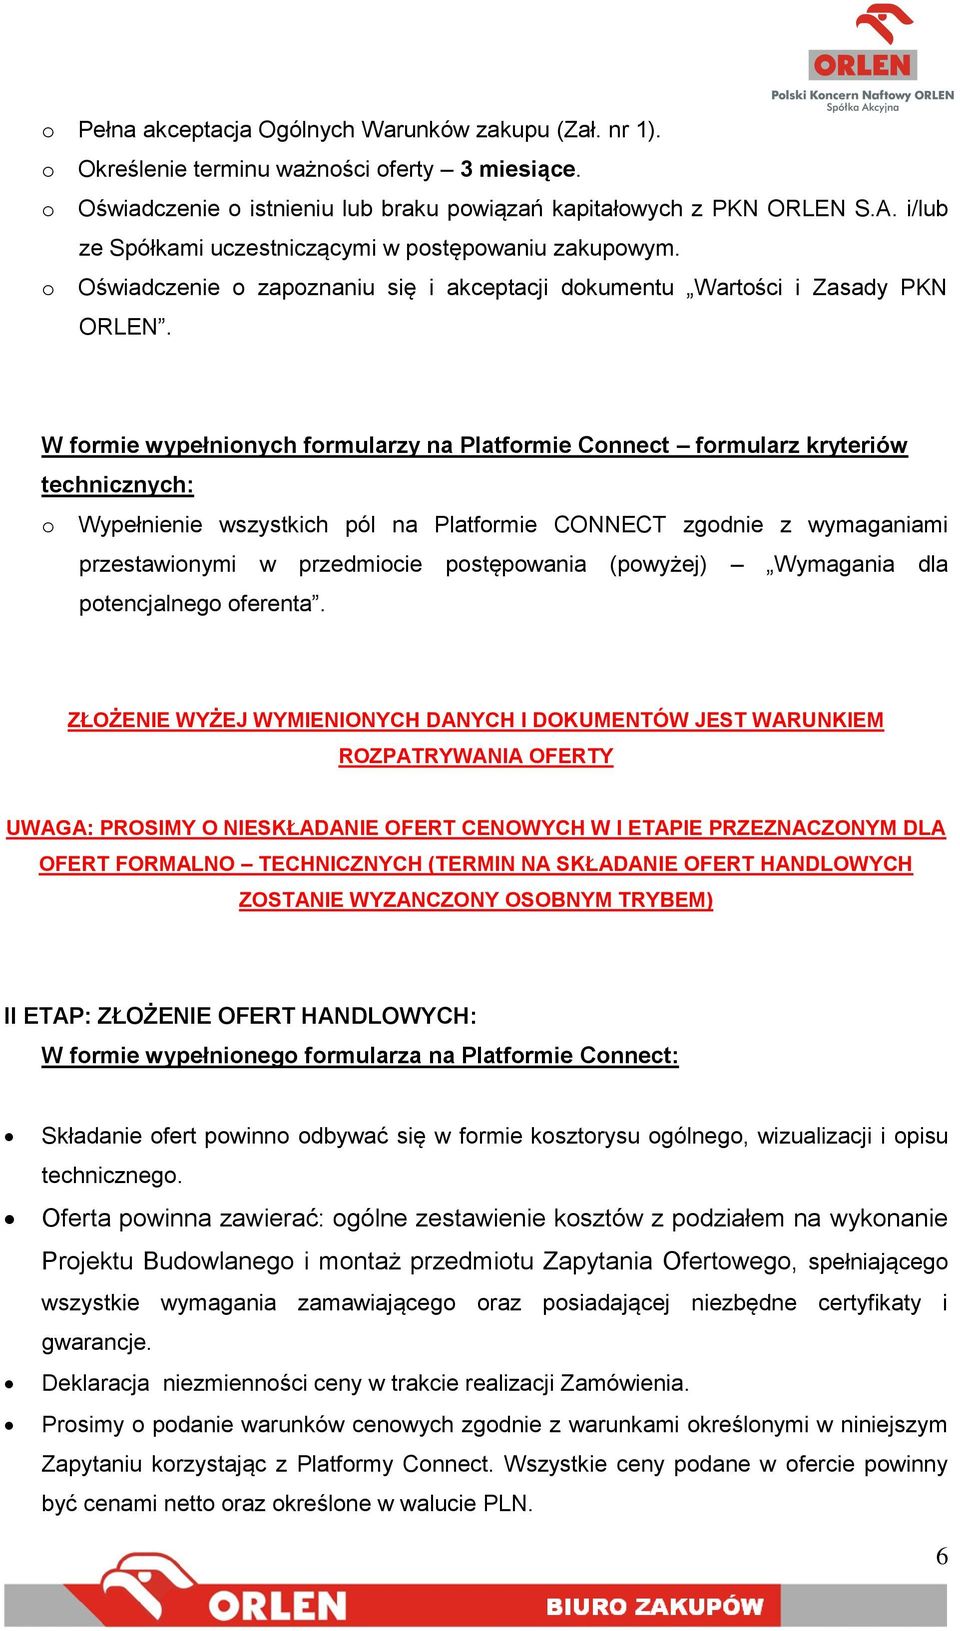 W formie wypełnionych formularzy na Platformie Connect formularz kryteriów technicznych: o Wypełnienie wszystkich pól na Platformie CONNECT zgodnie z wymaganiami przestawionymi w przedmiocie